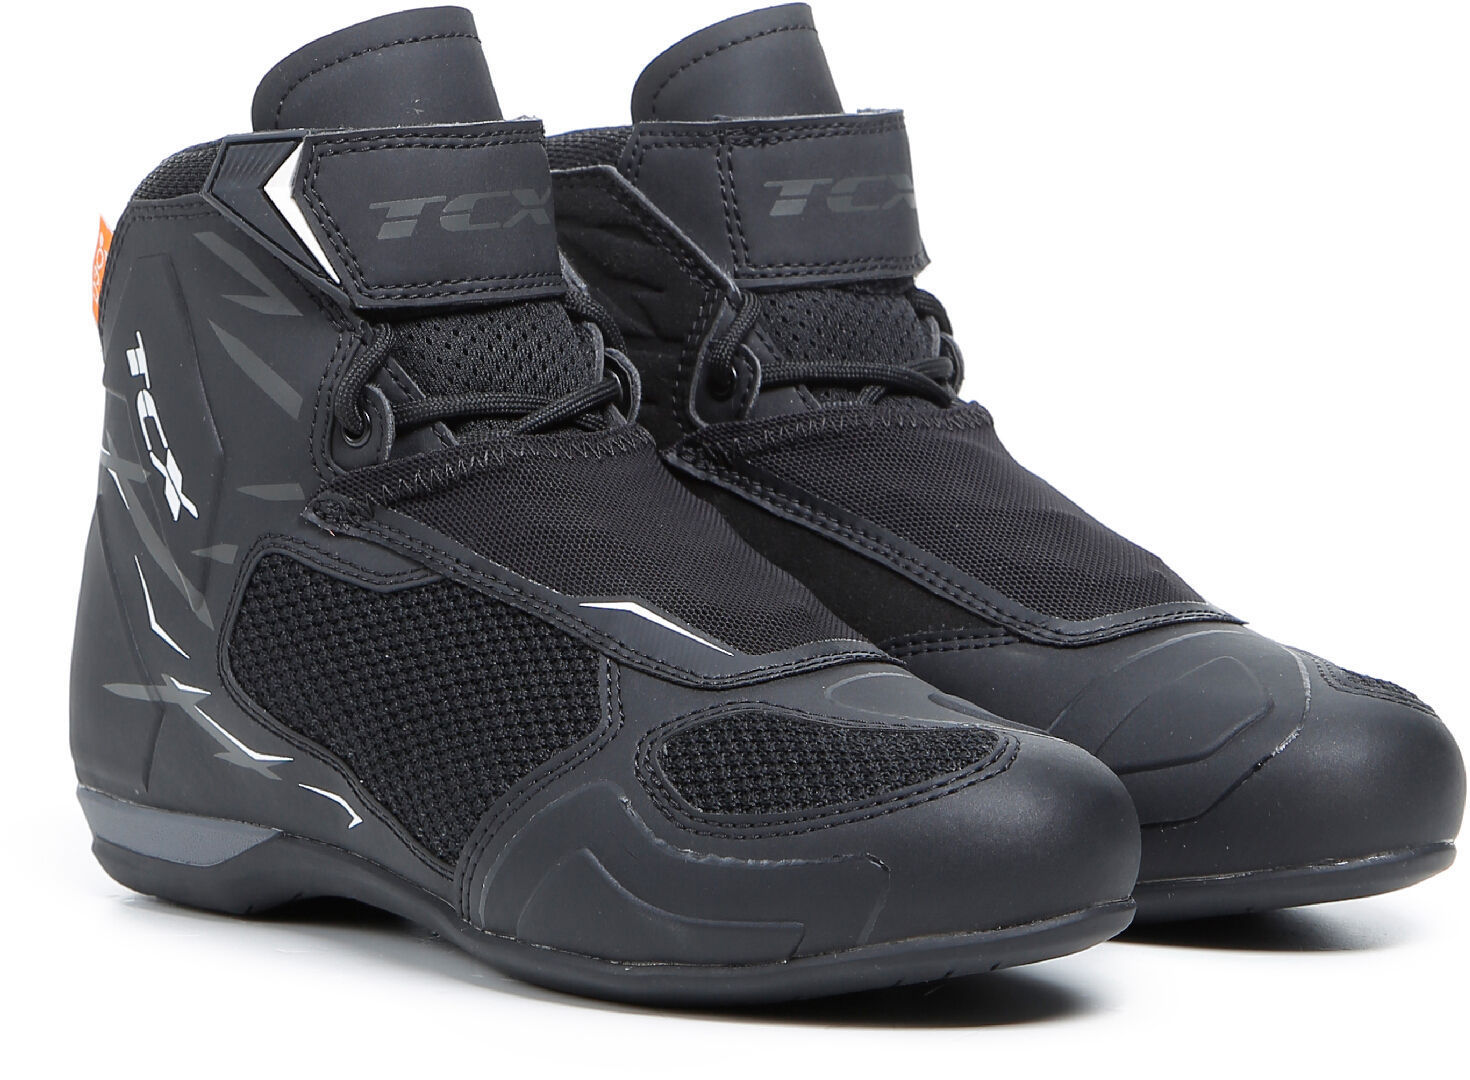 TCX RO4D Air Zapatos de moto - Negro Gris (46)